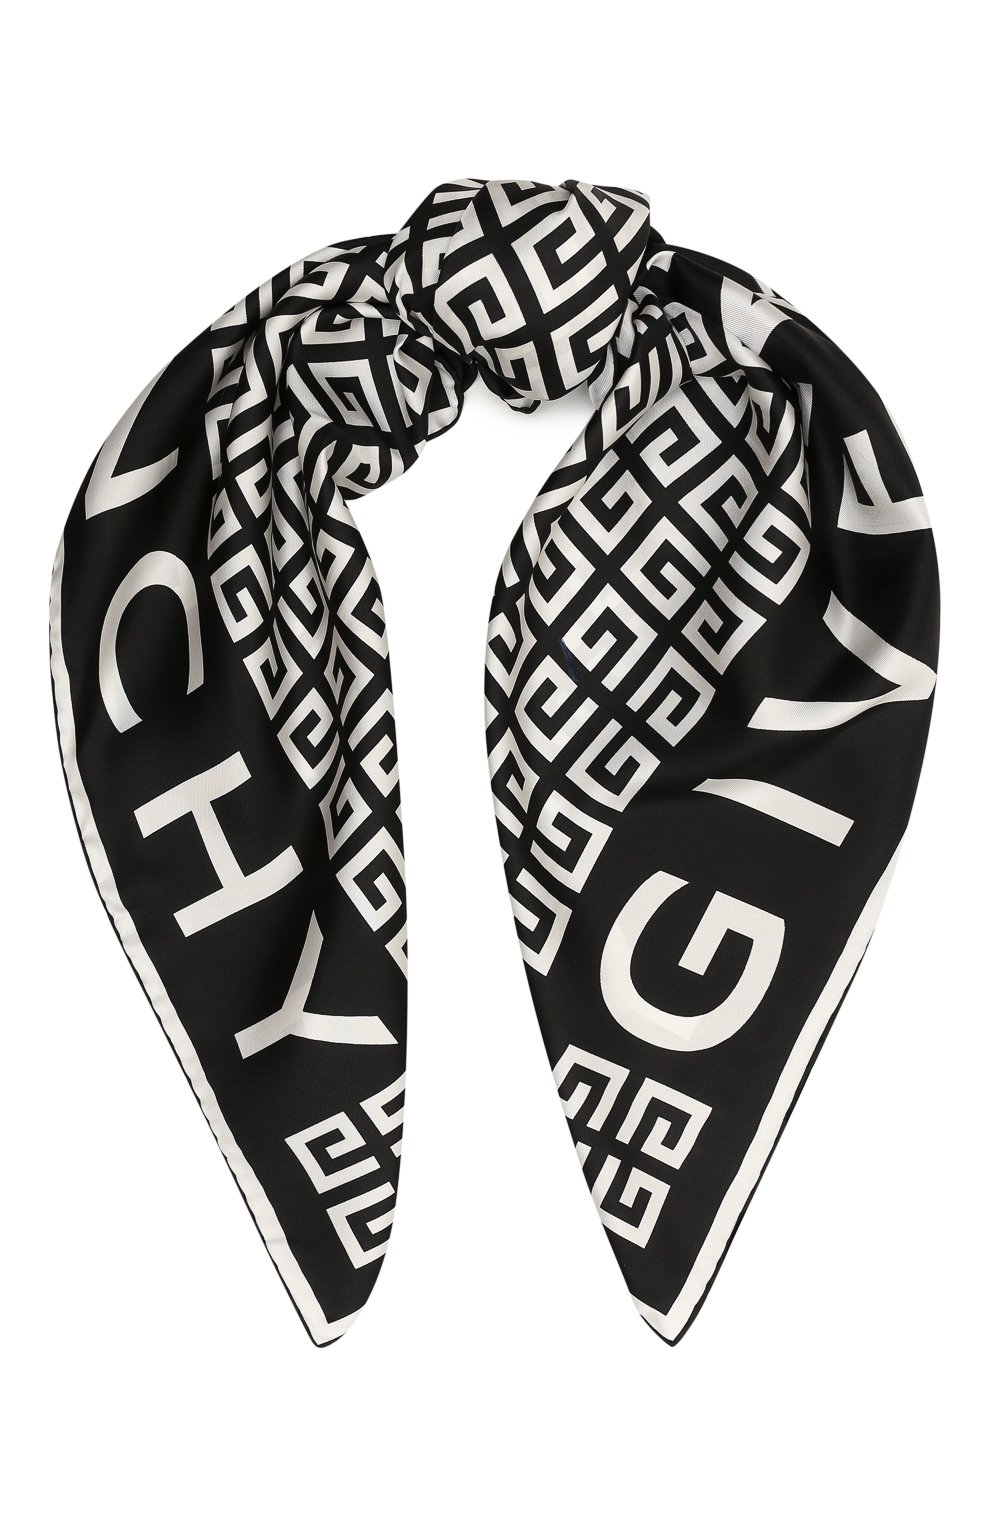 Платки Givenchy, Шелковый платок Givenchy, Италия, Чёрно-белый, Шелк: 100%;, 13104049  - купить